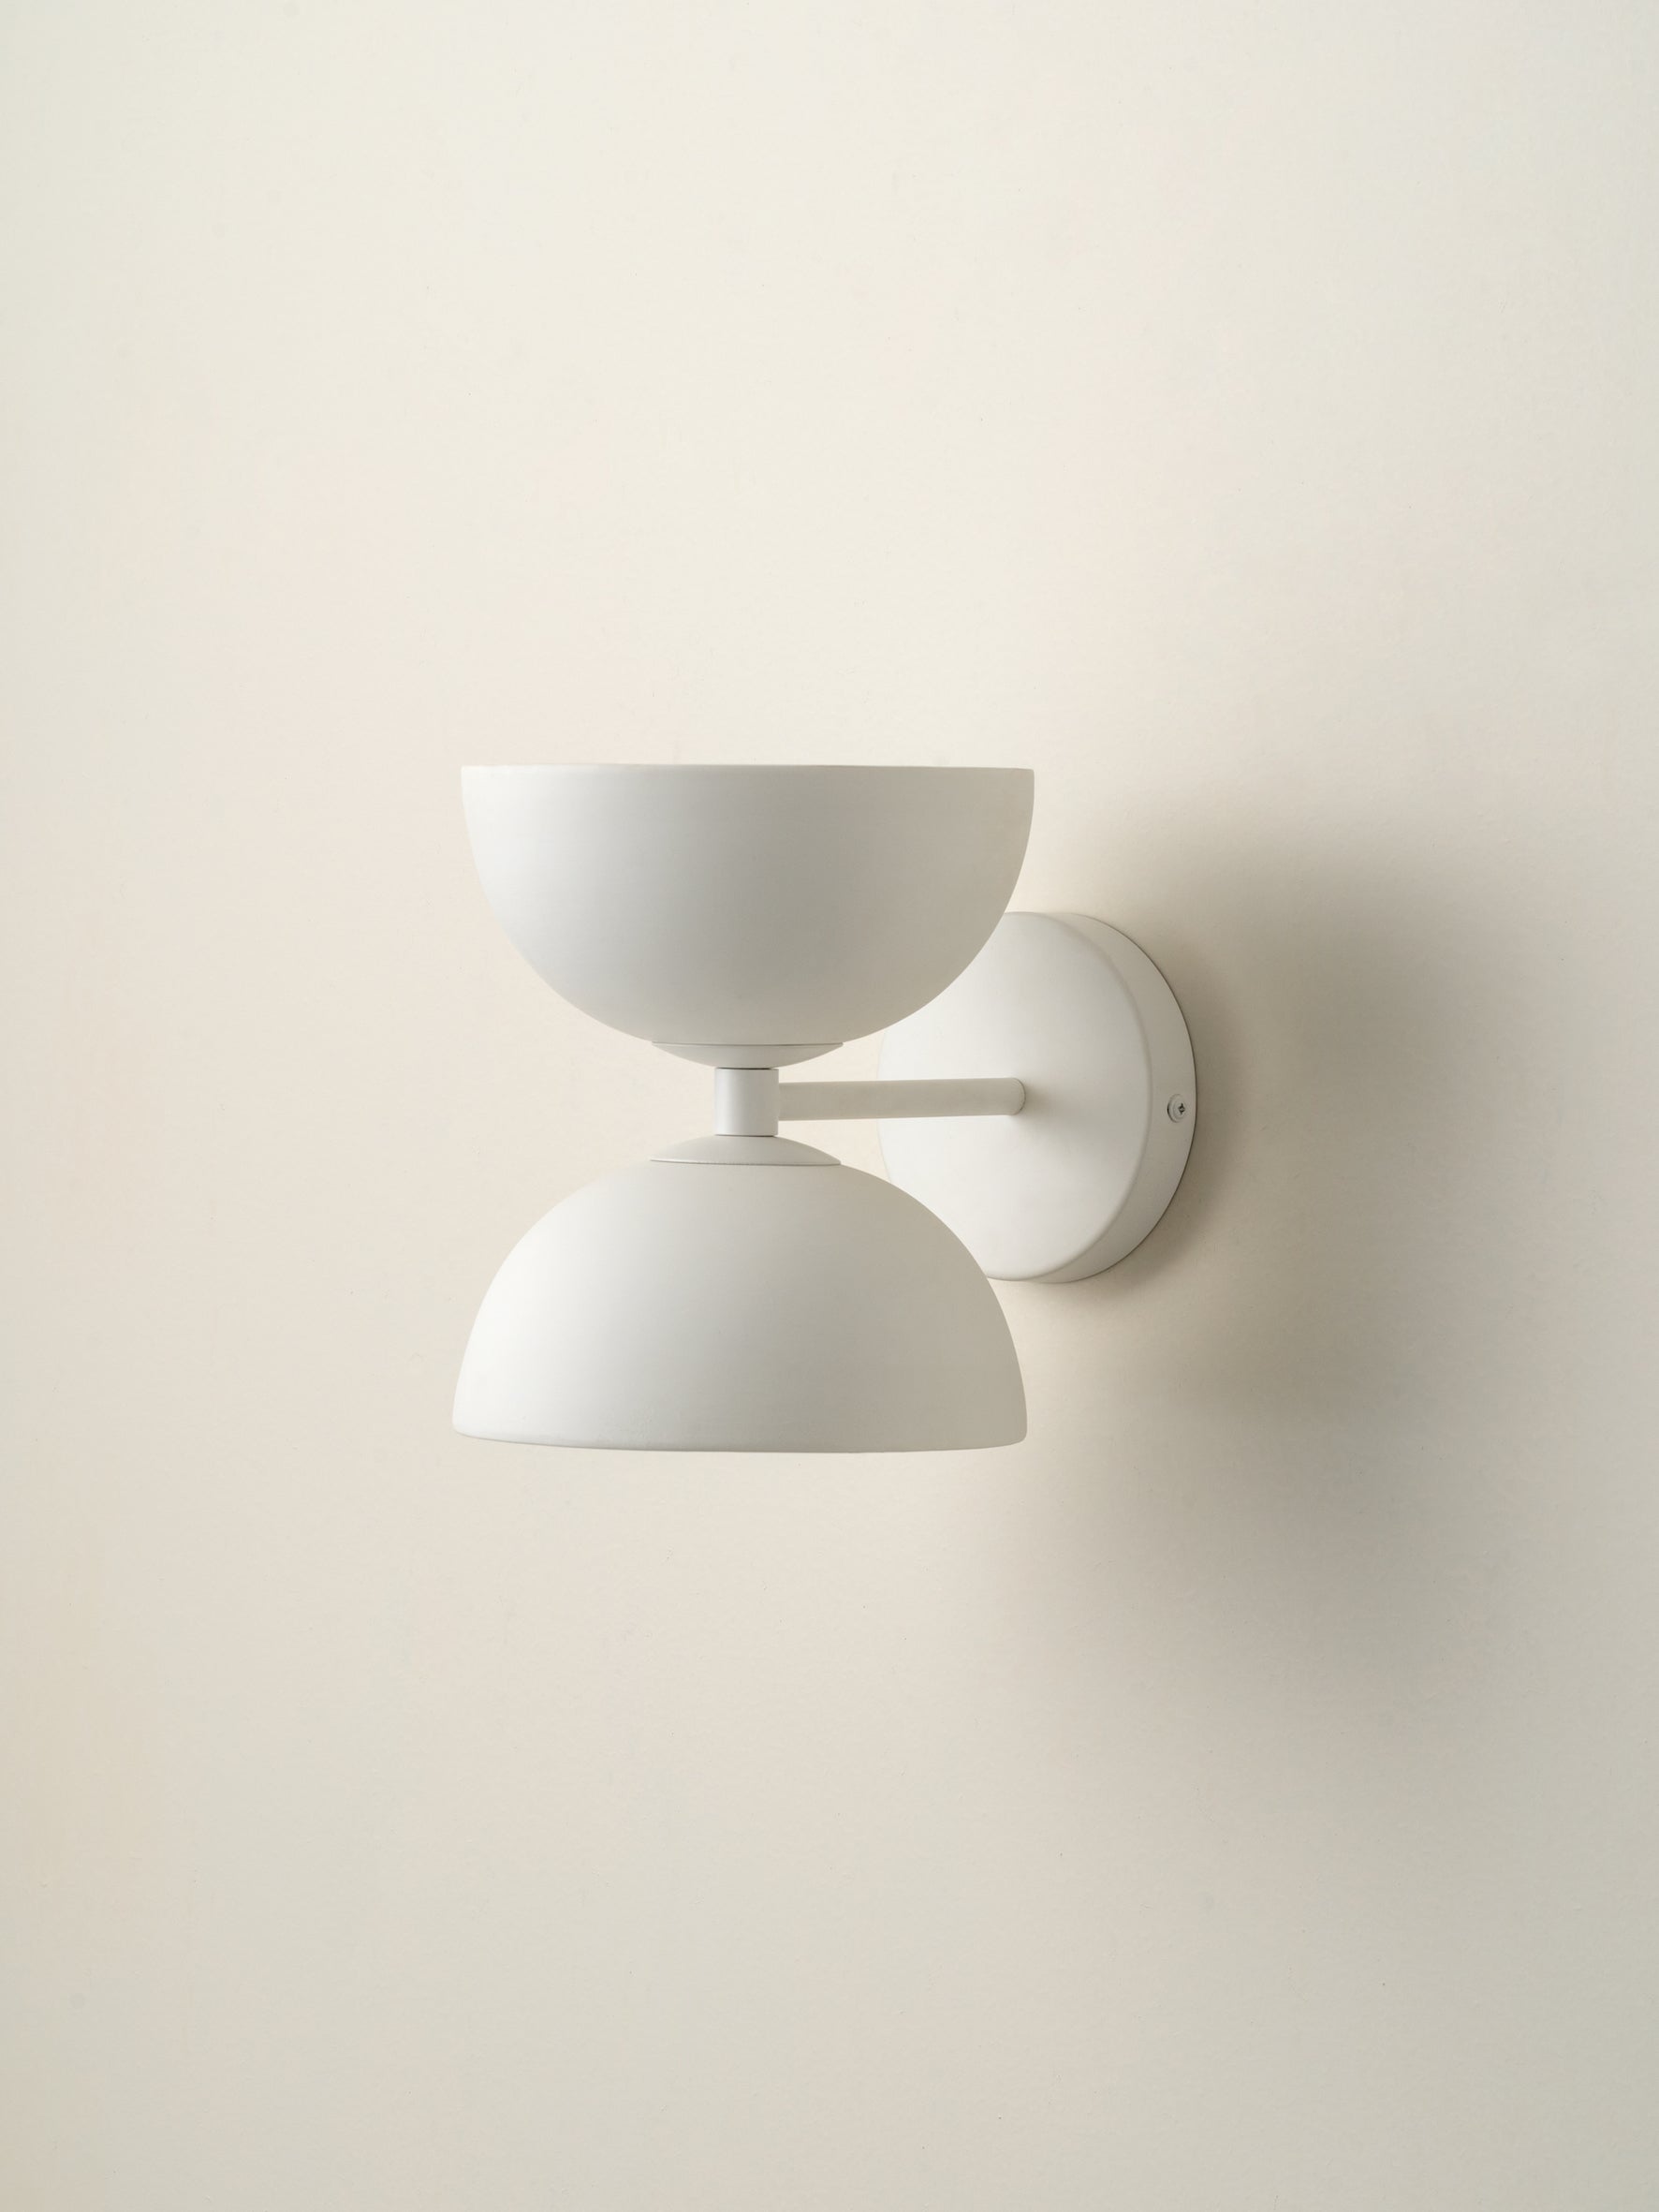 Ruzo - 2 light warm white and porcelain wall light | Wall Light | Lights & Lamps | UK | Modern Affordable Designer Lighting